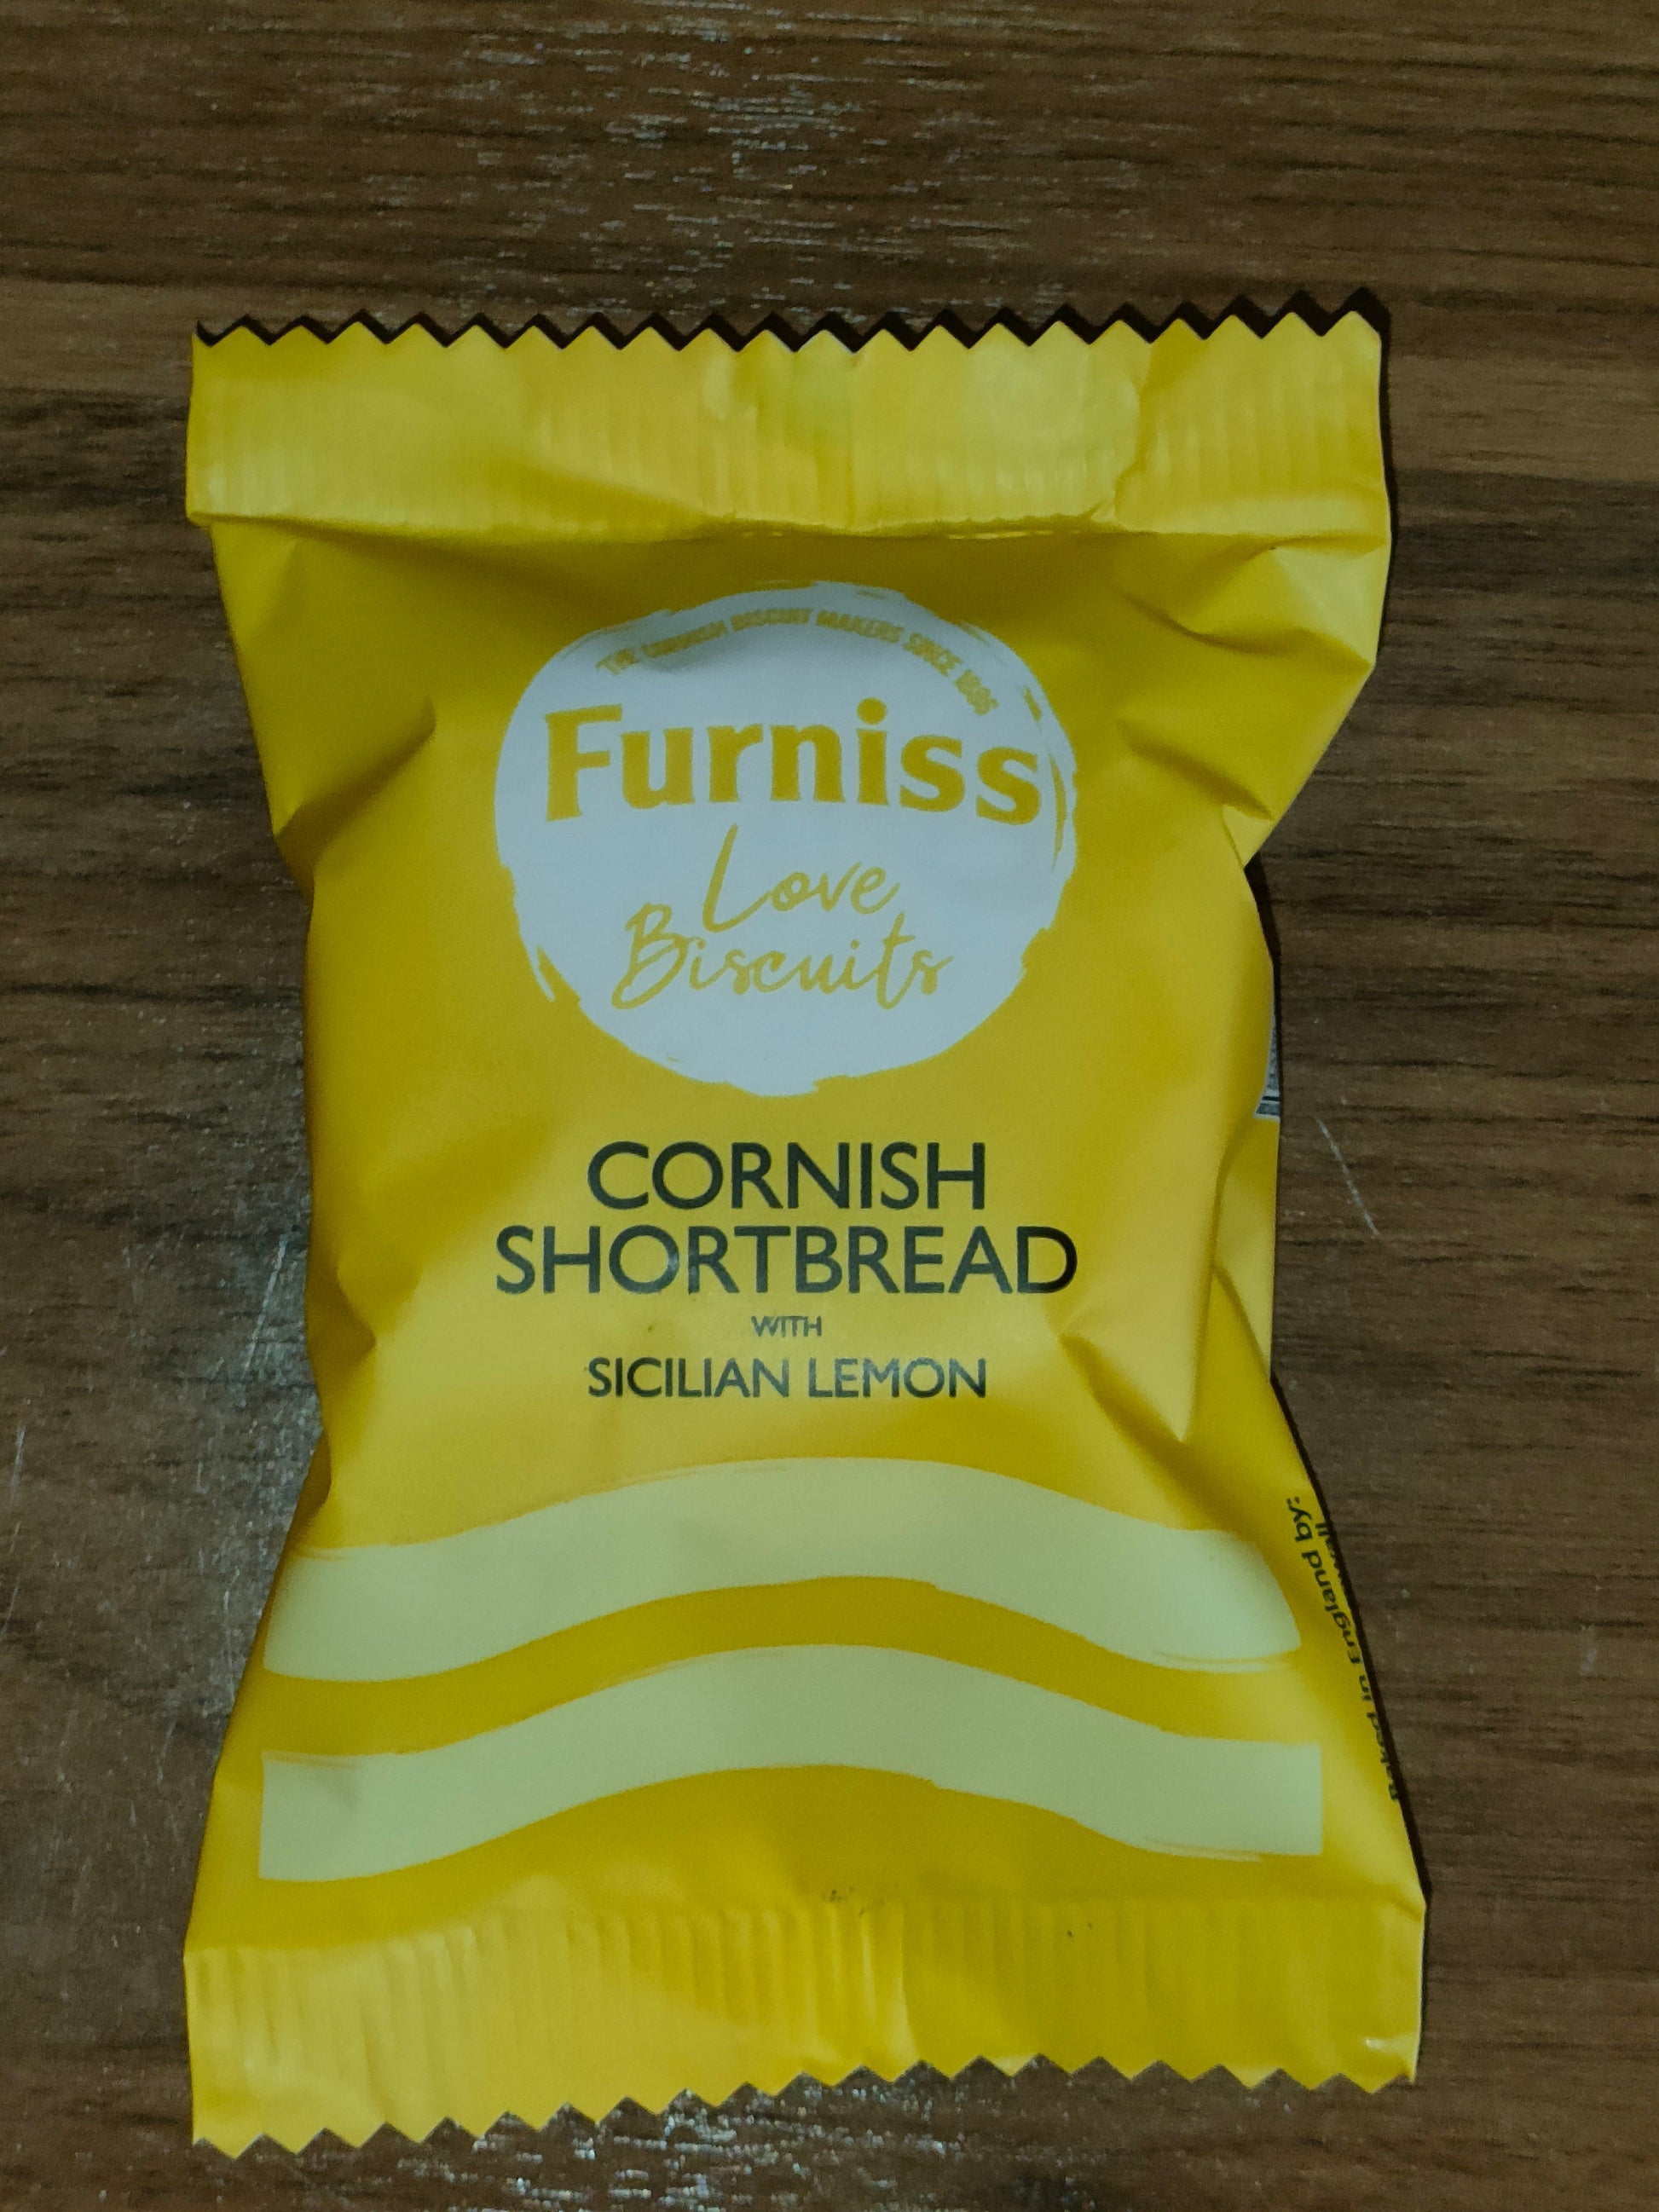 Furniss Cornish shortbread with Sicilian lemon twin pack - The Cornish Scone Company